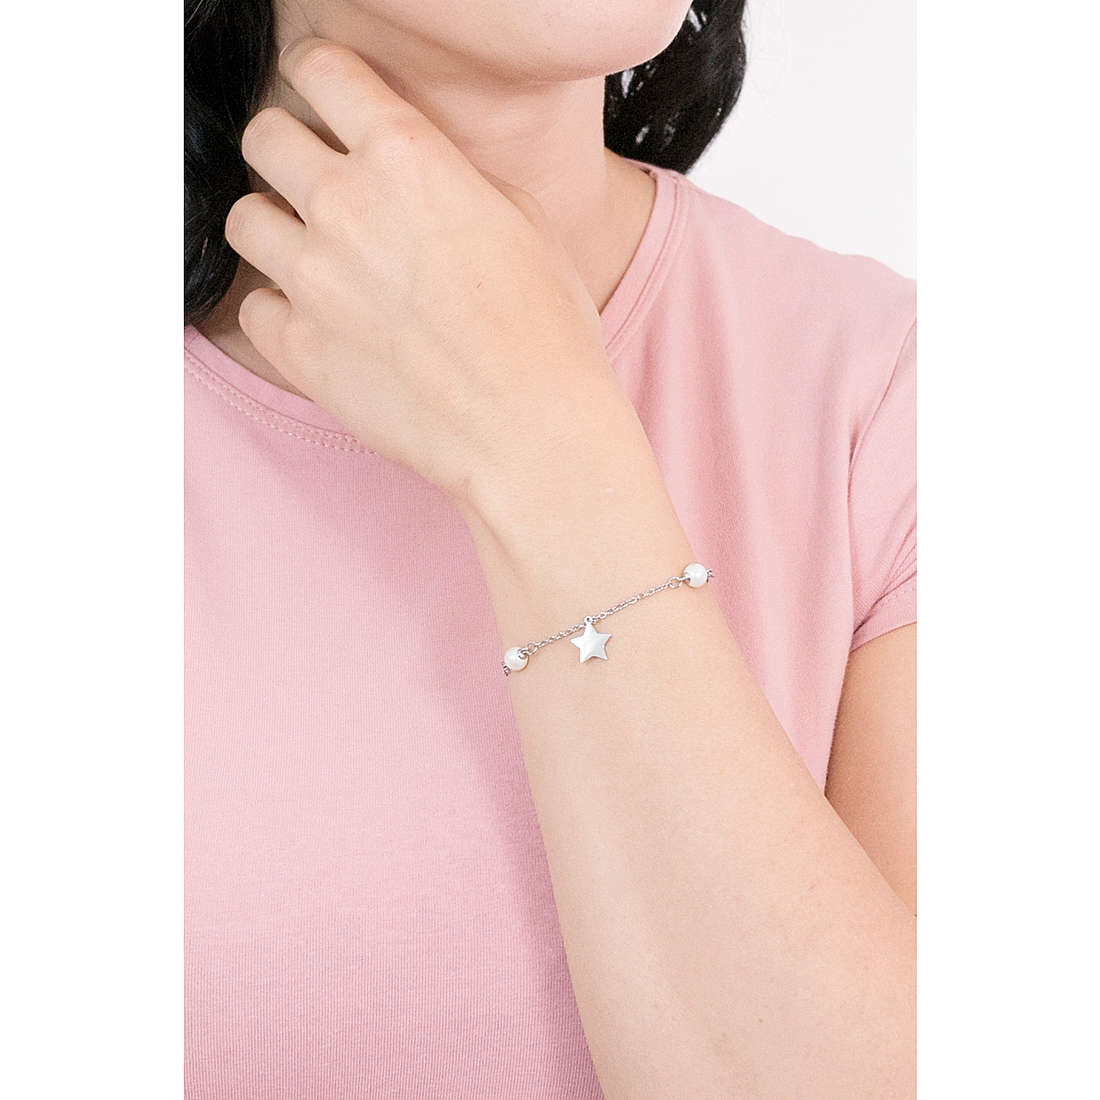 Luca Barra bracelets Perle woman LBBK1687 wearing